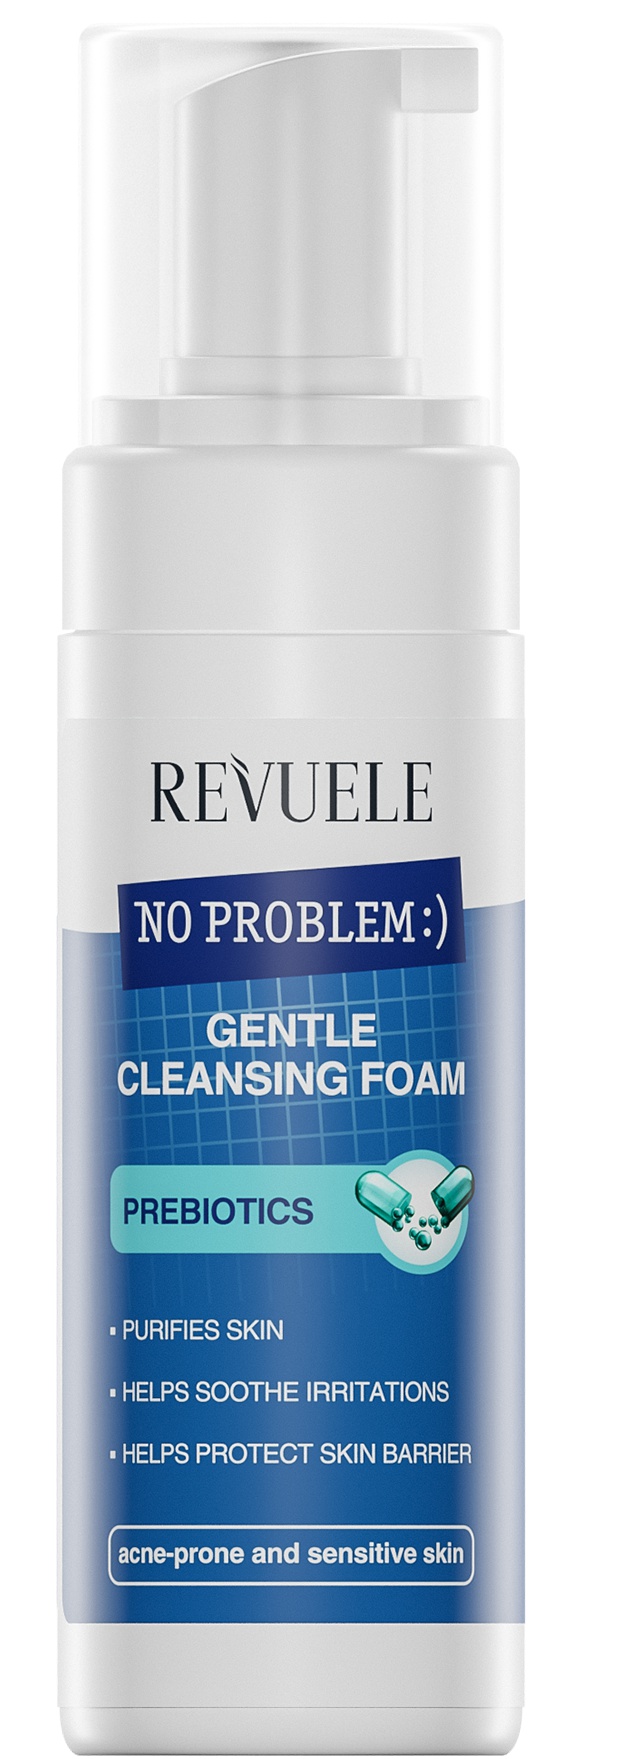 Revuele No Problem Gentle Cleansing Foam Prebiotics